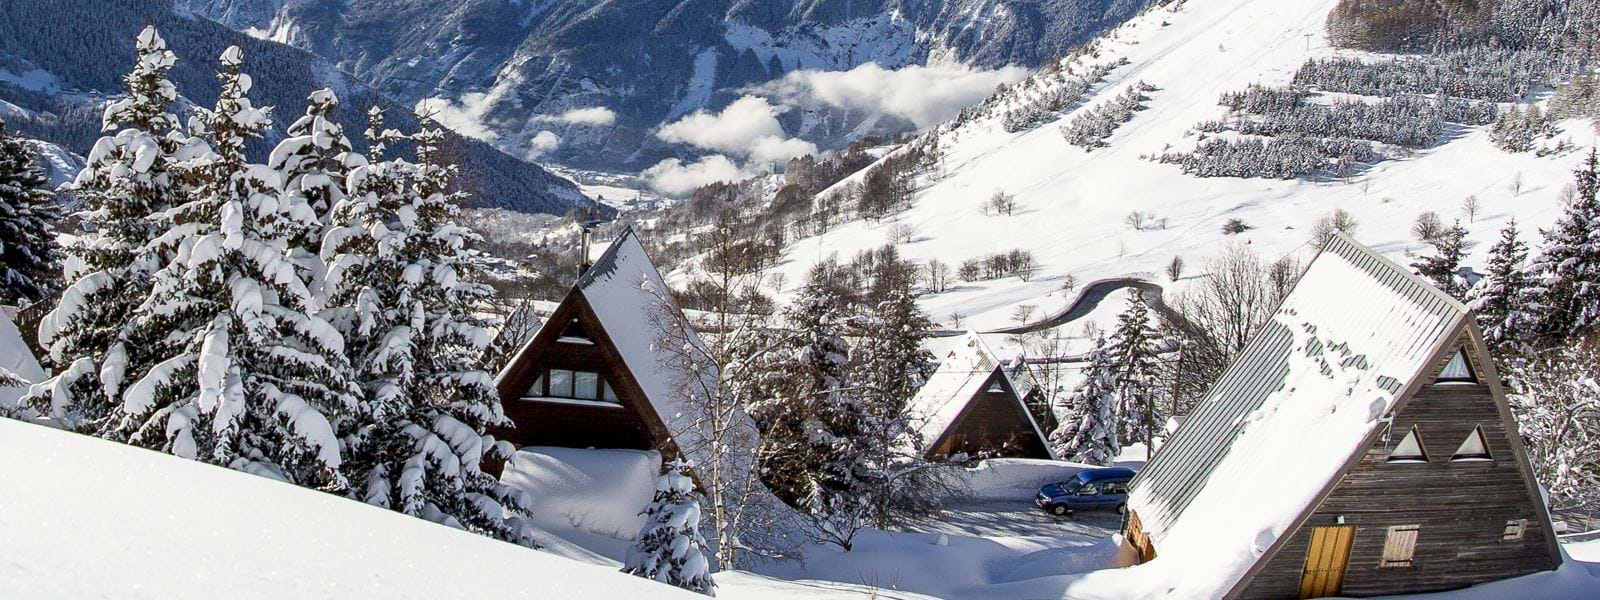 Alpe d'Huez i - Billig skiferie med familien -